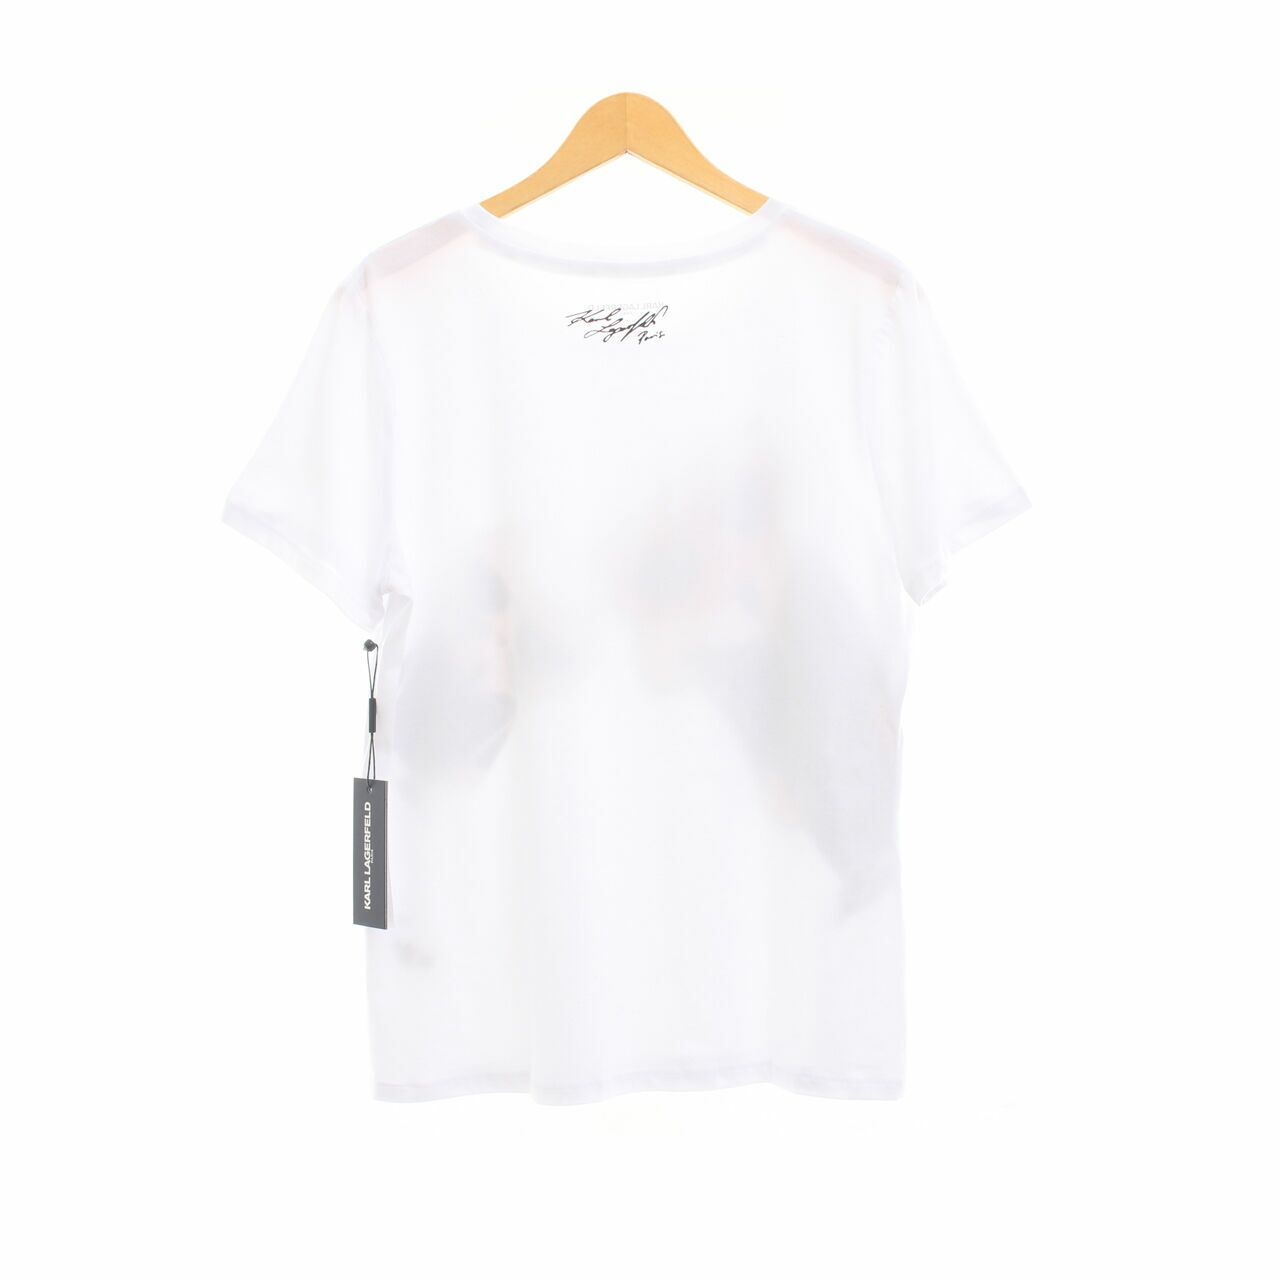 Karl Lagerfeld Paris White Graphic White Tshirt